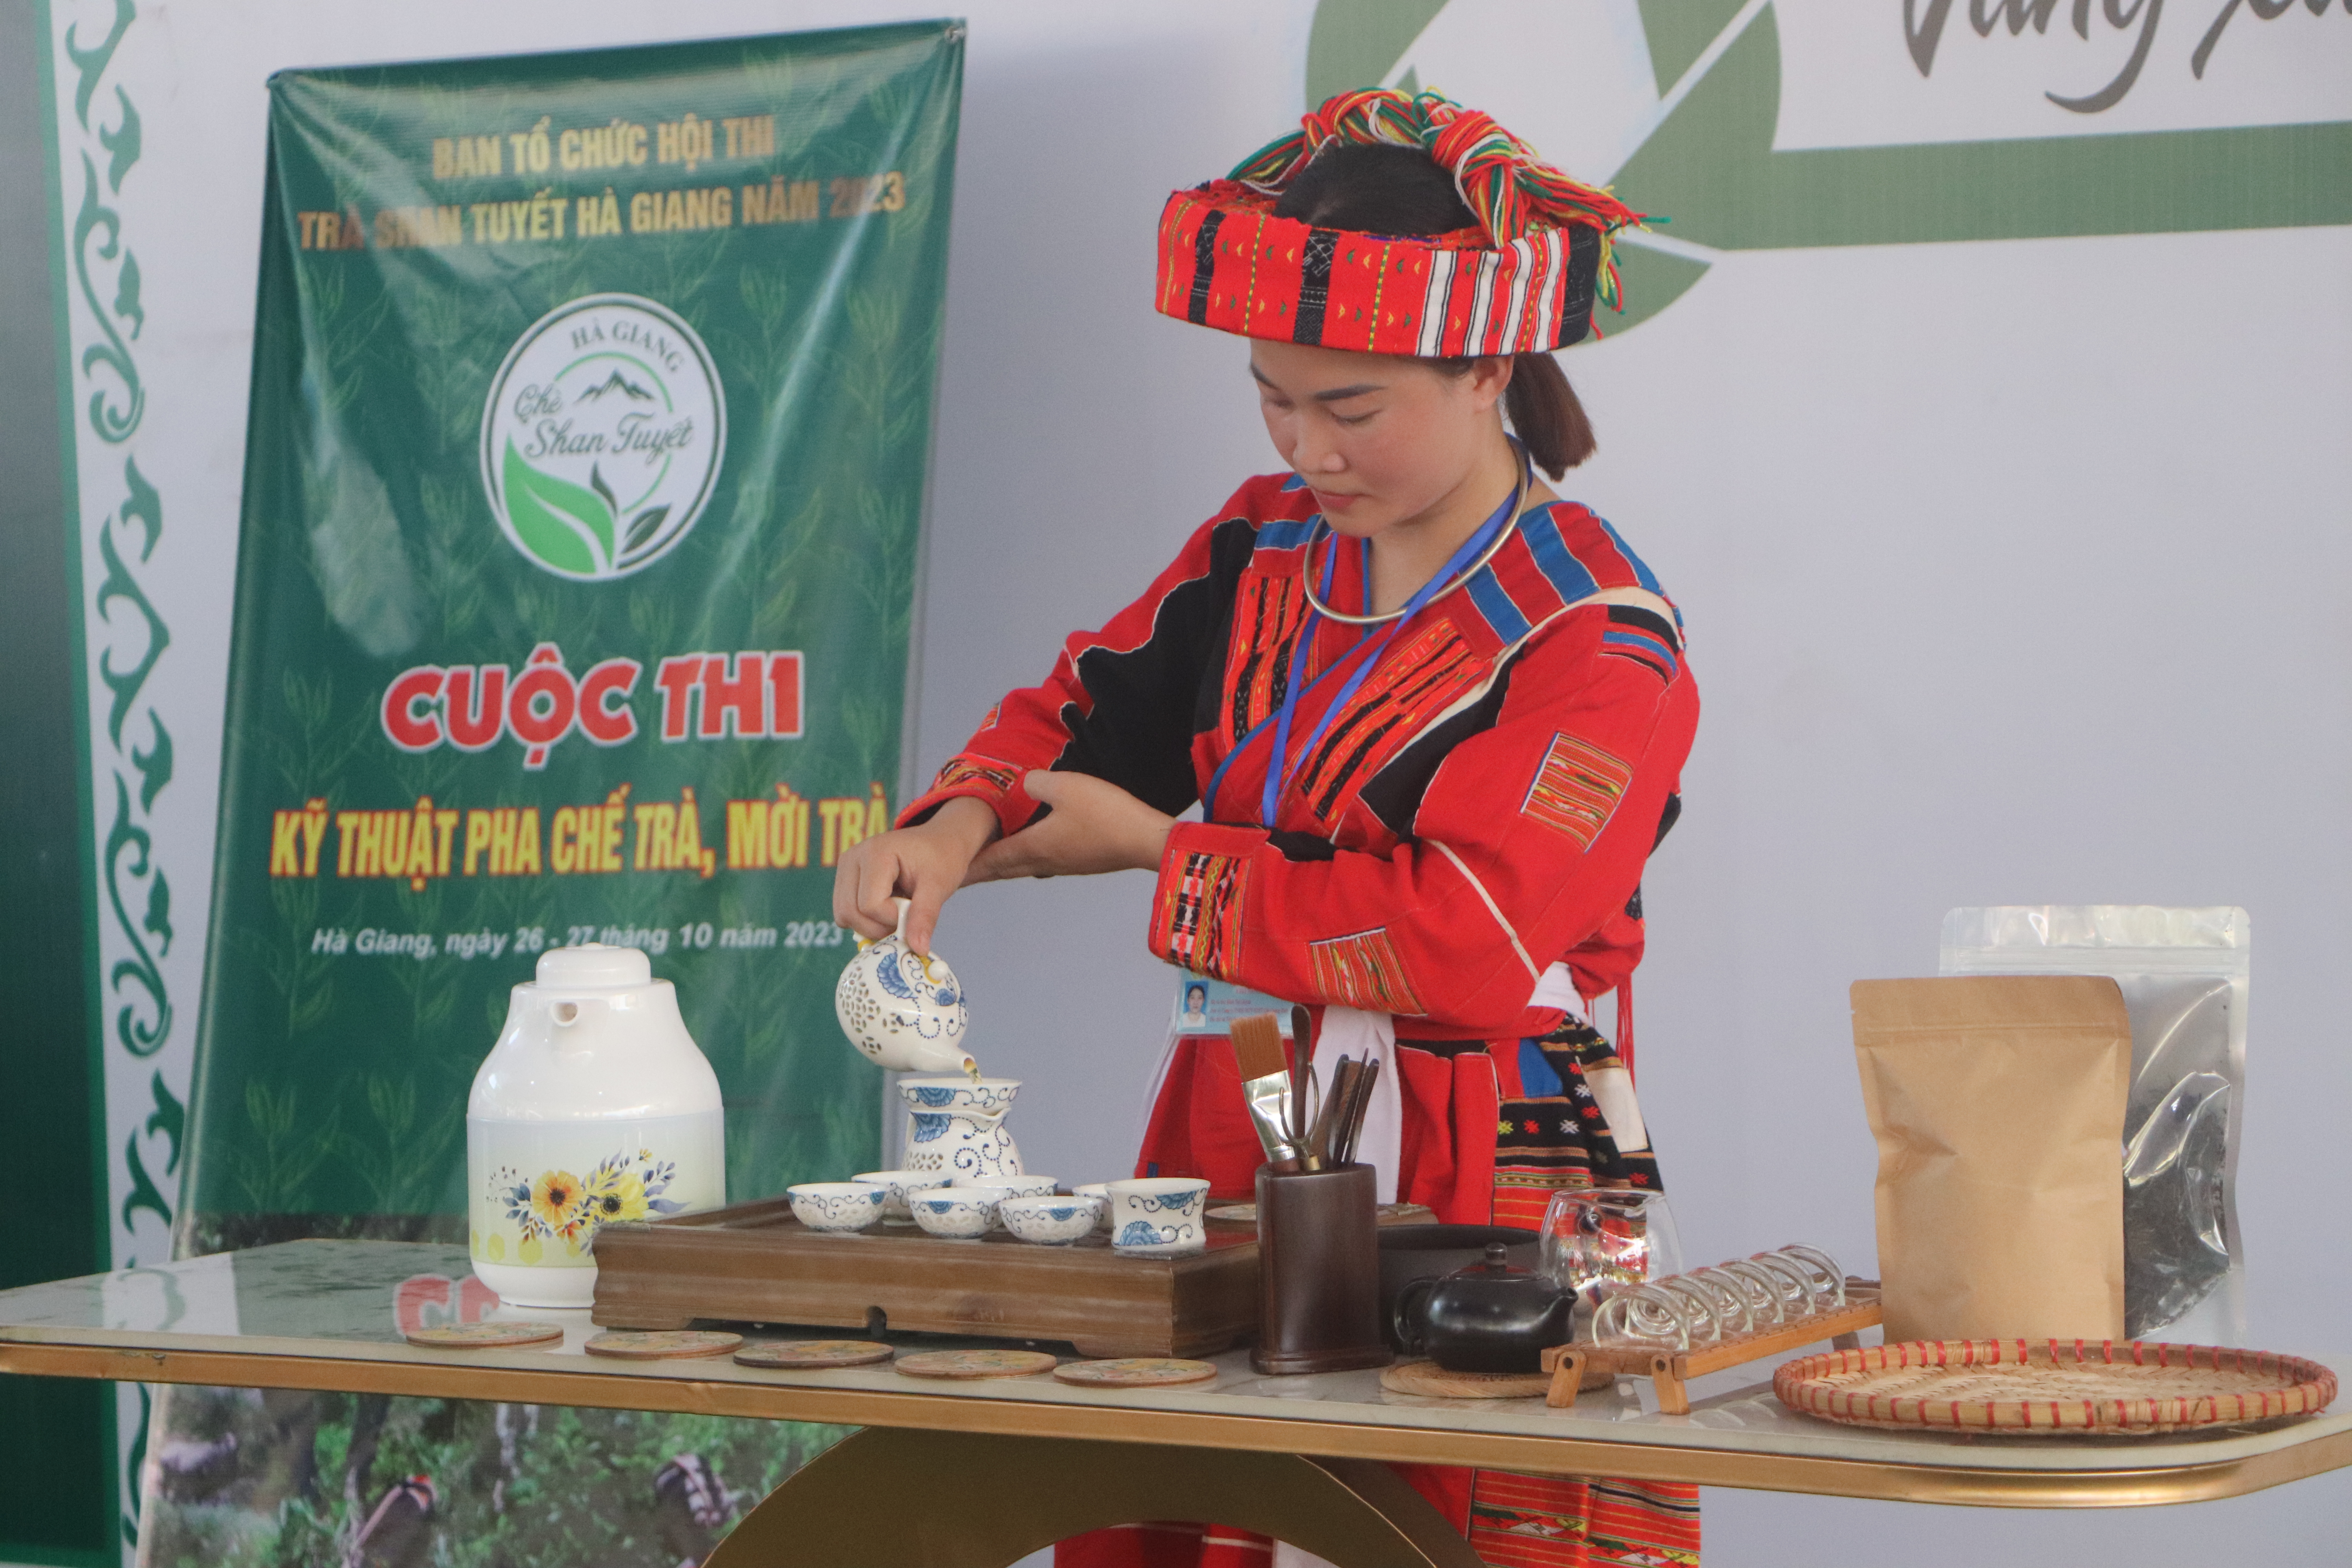 Hội thi Trà Shan tuyết Hà Giang 2023: Phần thi kỹ thuật pha chế trà  - Ảnh 1